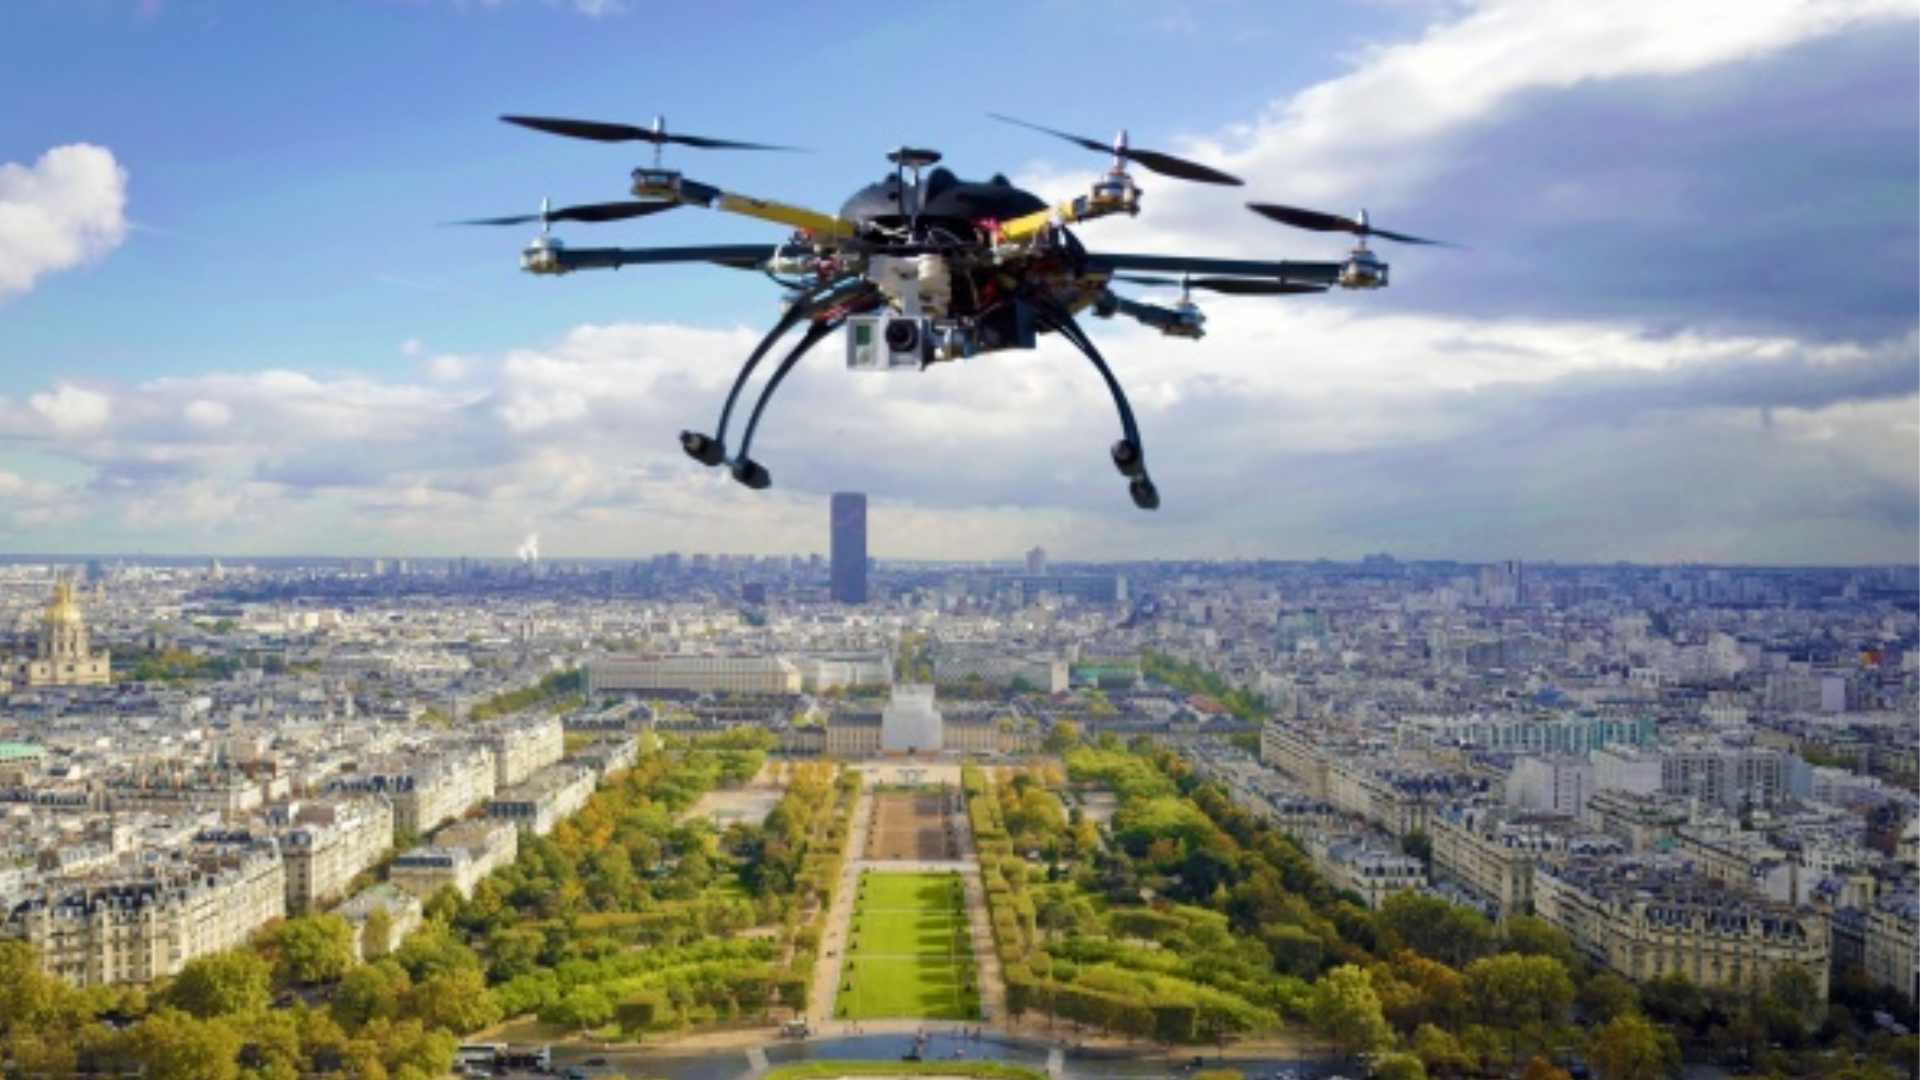 Processamento, análise de imagens e mapeamento com drones